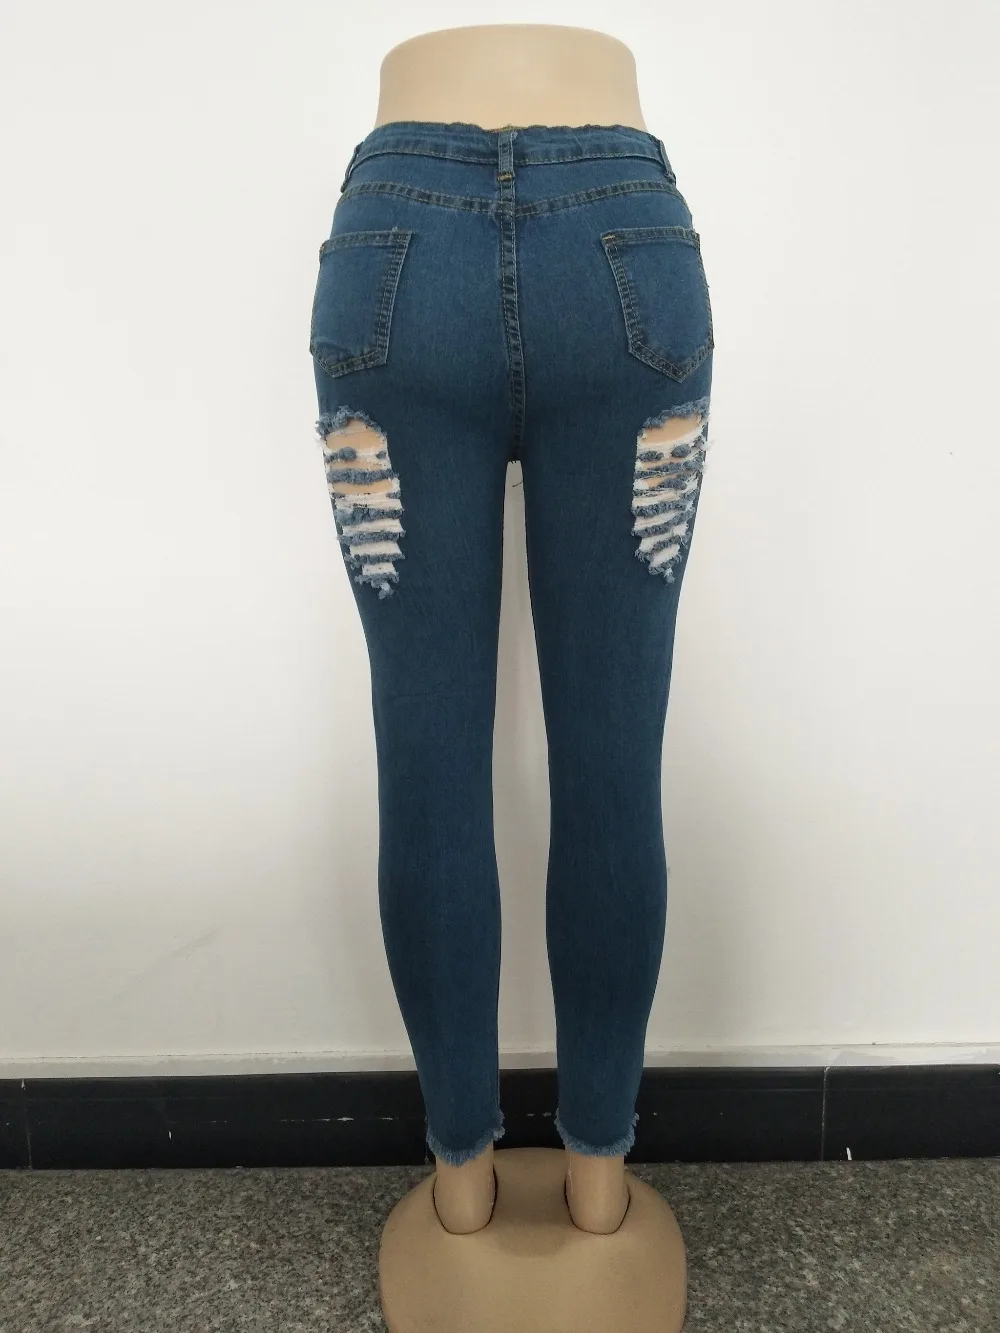 Женские рваные джинсы с завышенной талией синего цвета, обтягивающие джинсовые брюки-карандаш, растягивающиеся, с высокой талией, потертые, женский наряд Jea